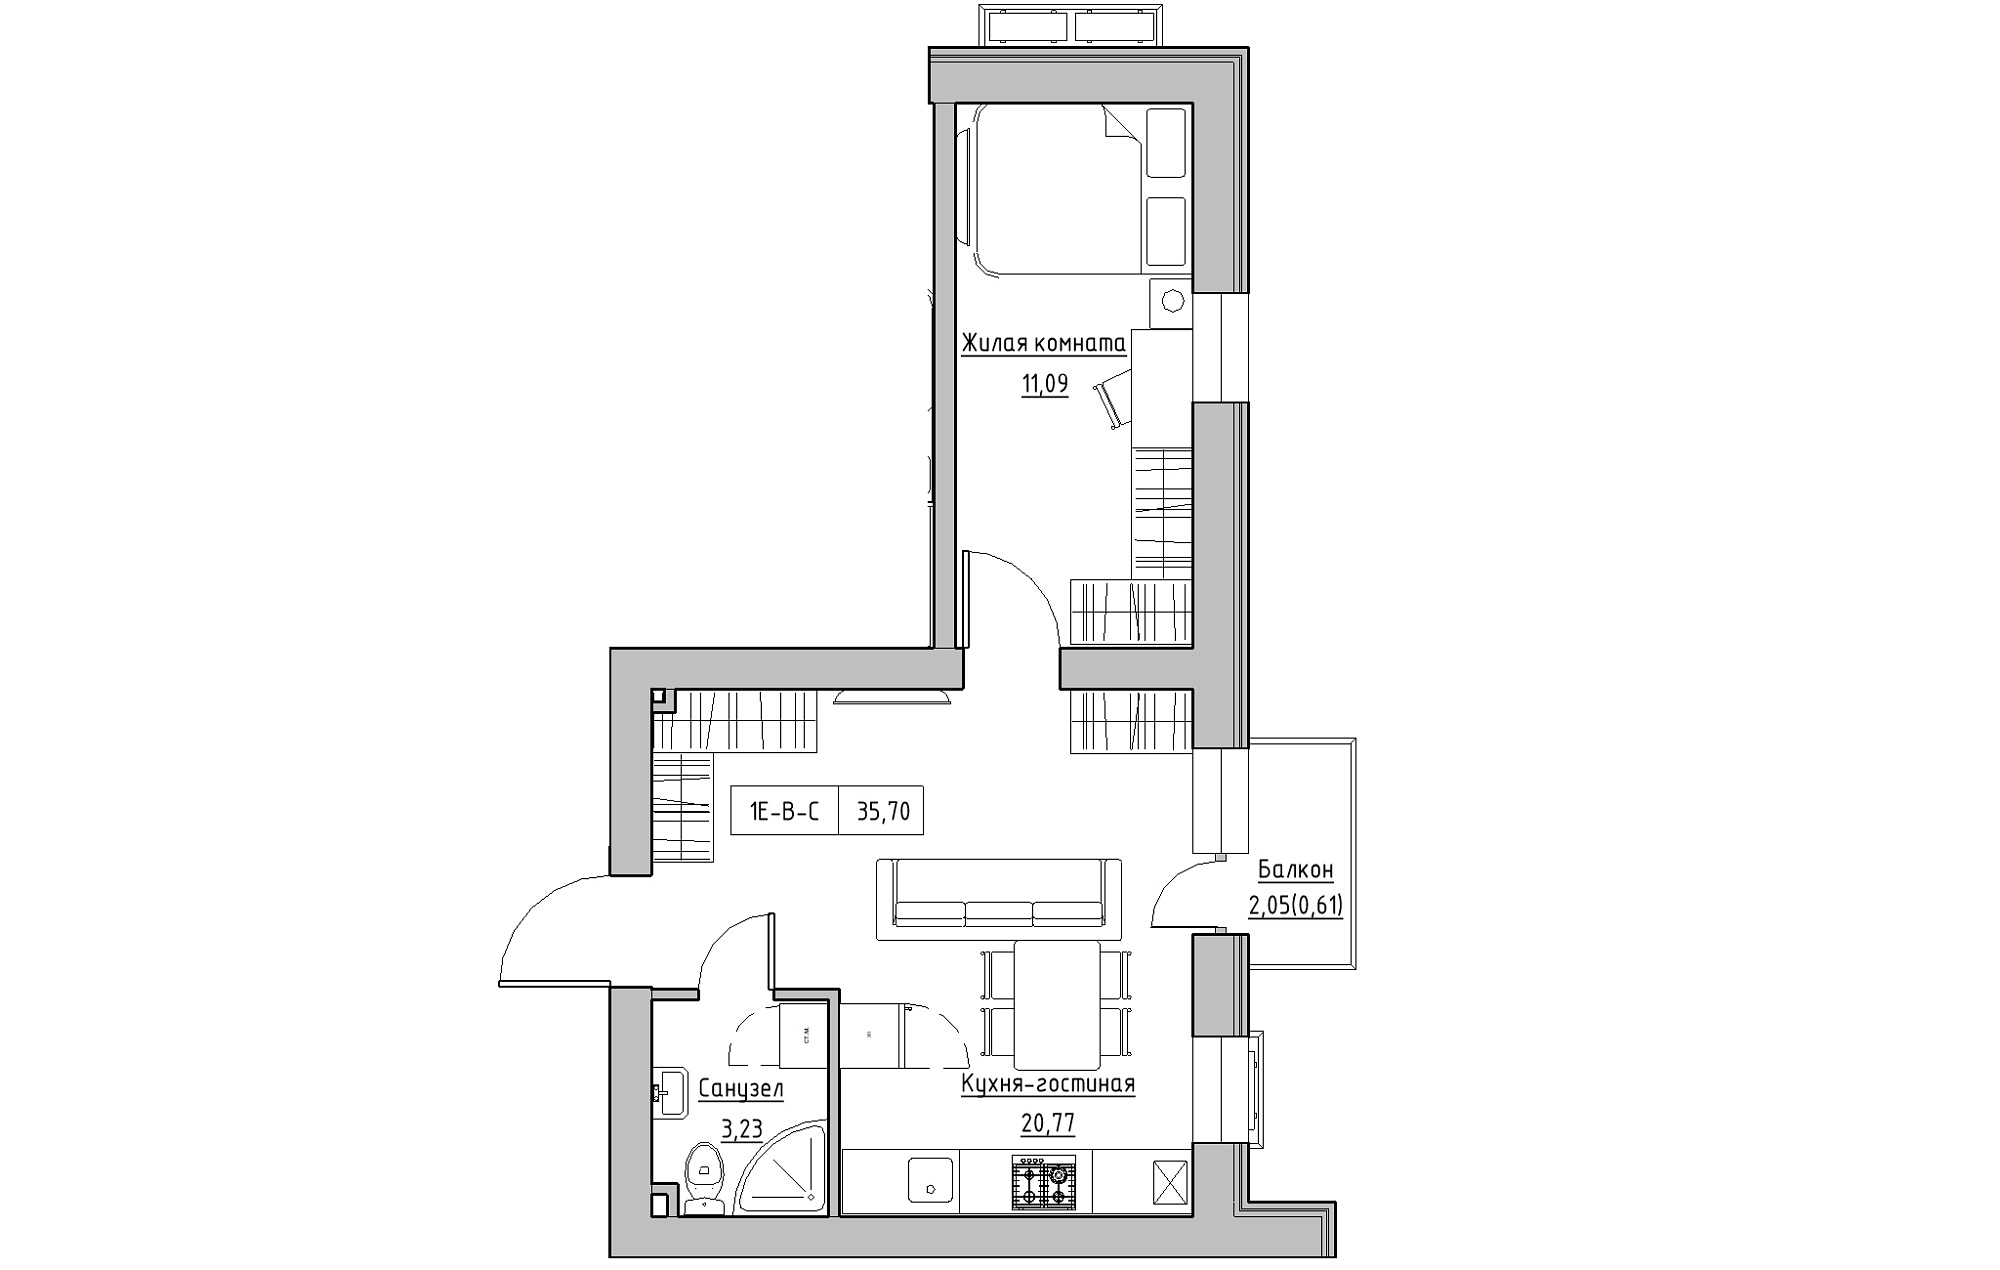 Планування 1-к квартира площею 37.5м2, KS-018-02/0009.